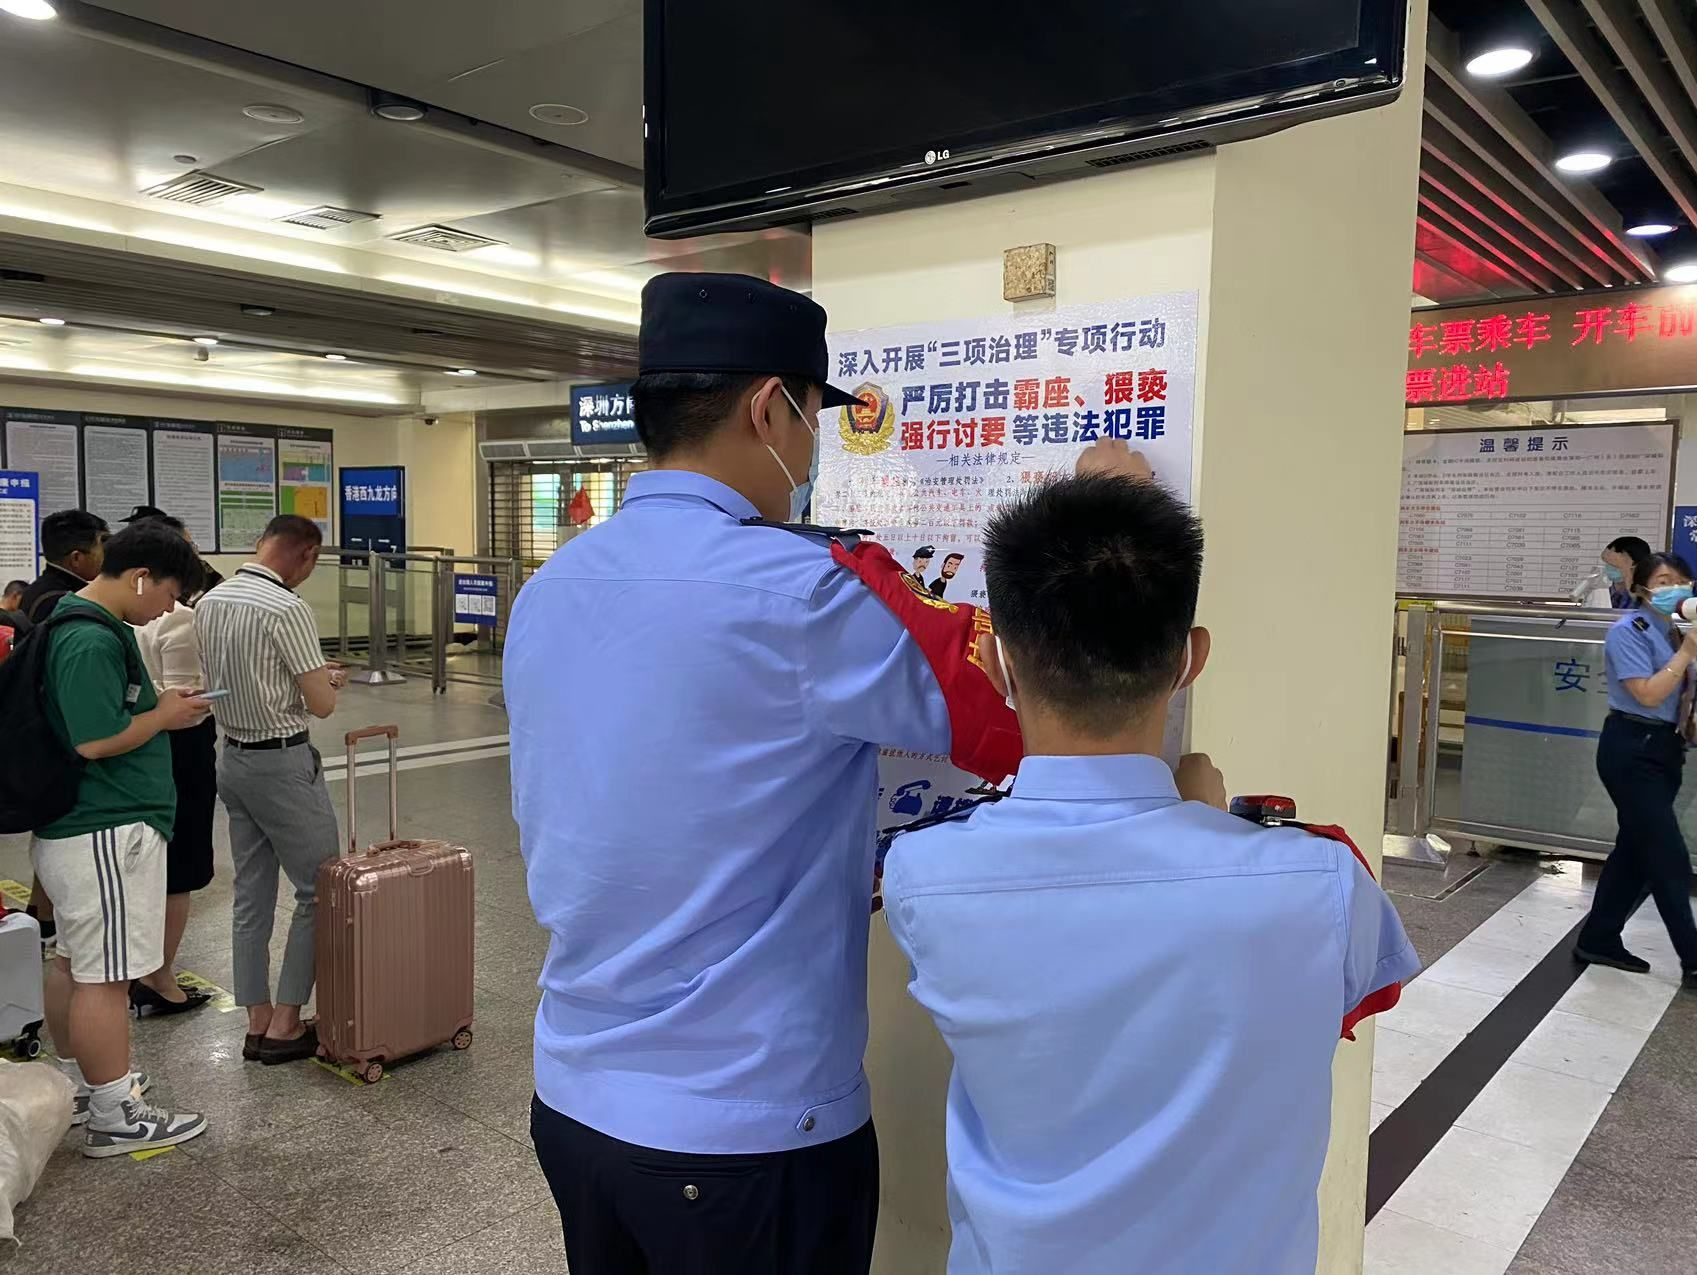 深圳铁路公安开展反霸座、防猥亵、拒强讨“三项治理”专项行动